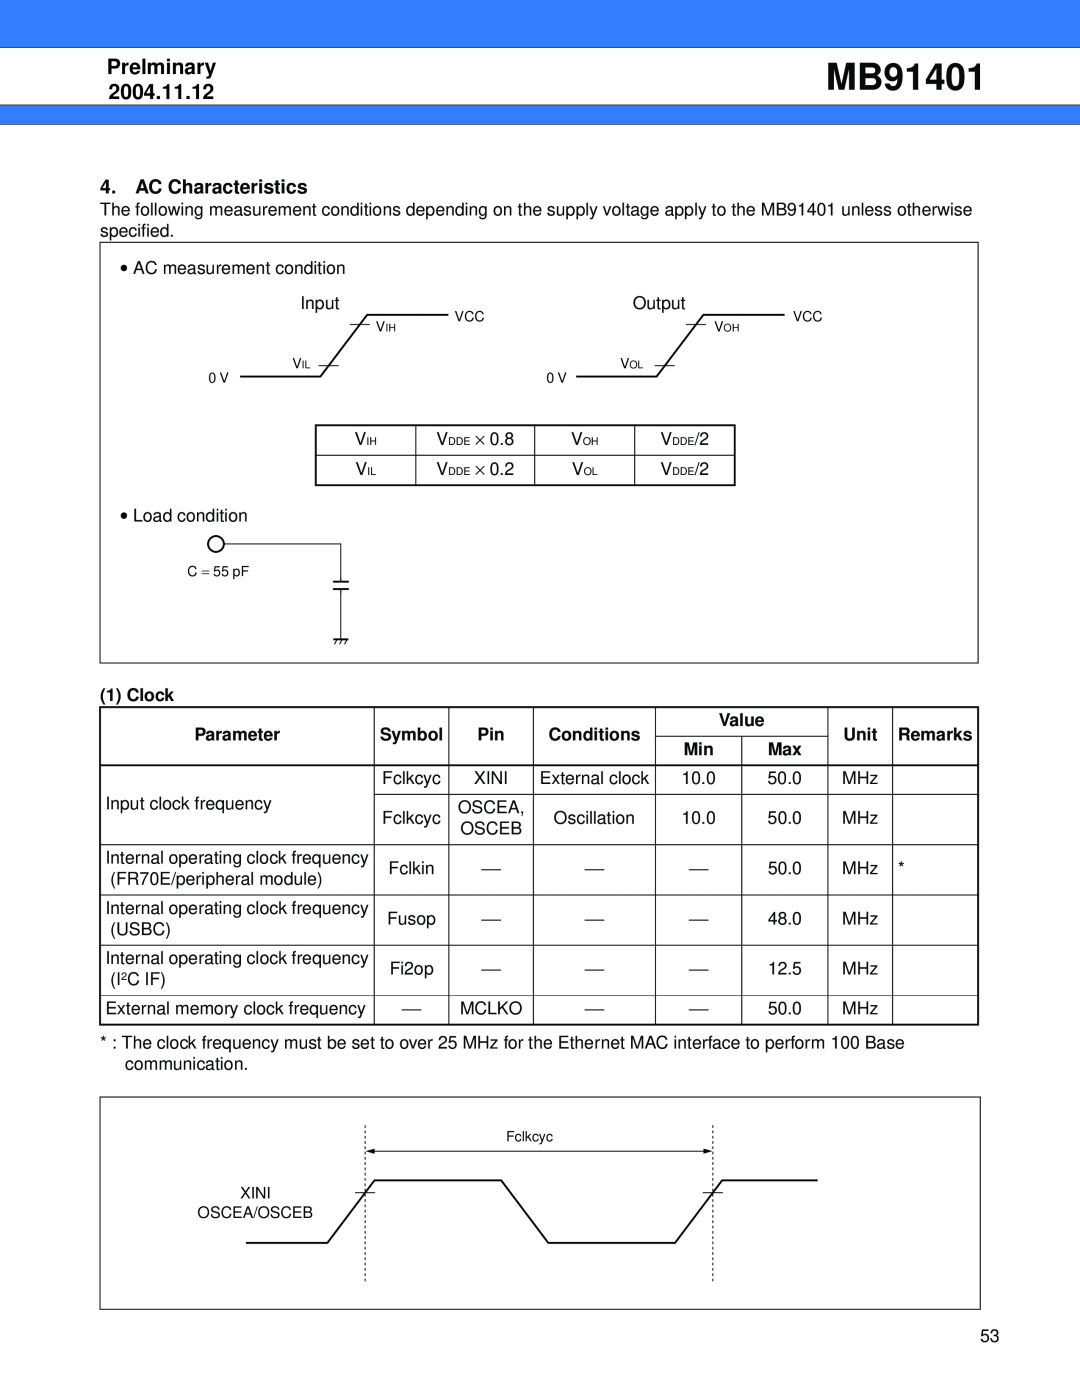 Fujitsu MB91401 AC Characteristics, Clock, Prelminary, 2004.11.12, Parameter, Symbol, Conditions, Value, Unit, Remarks 